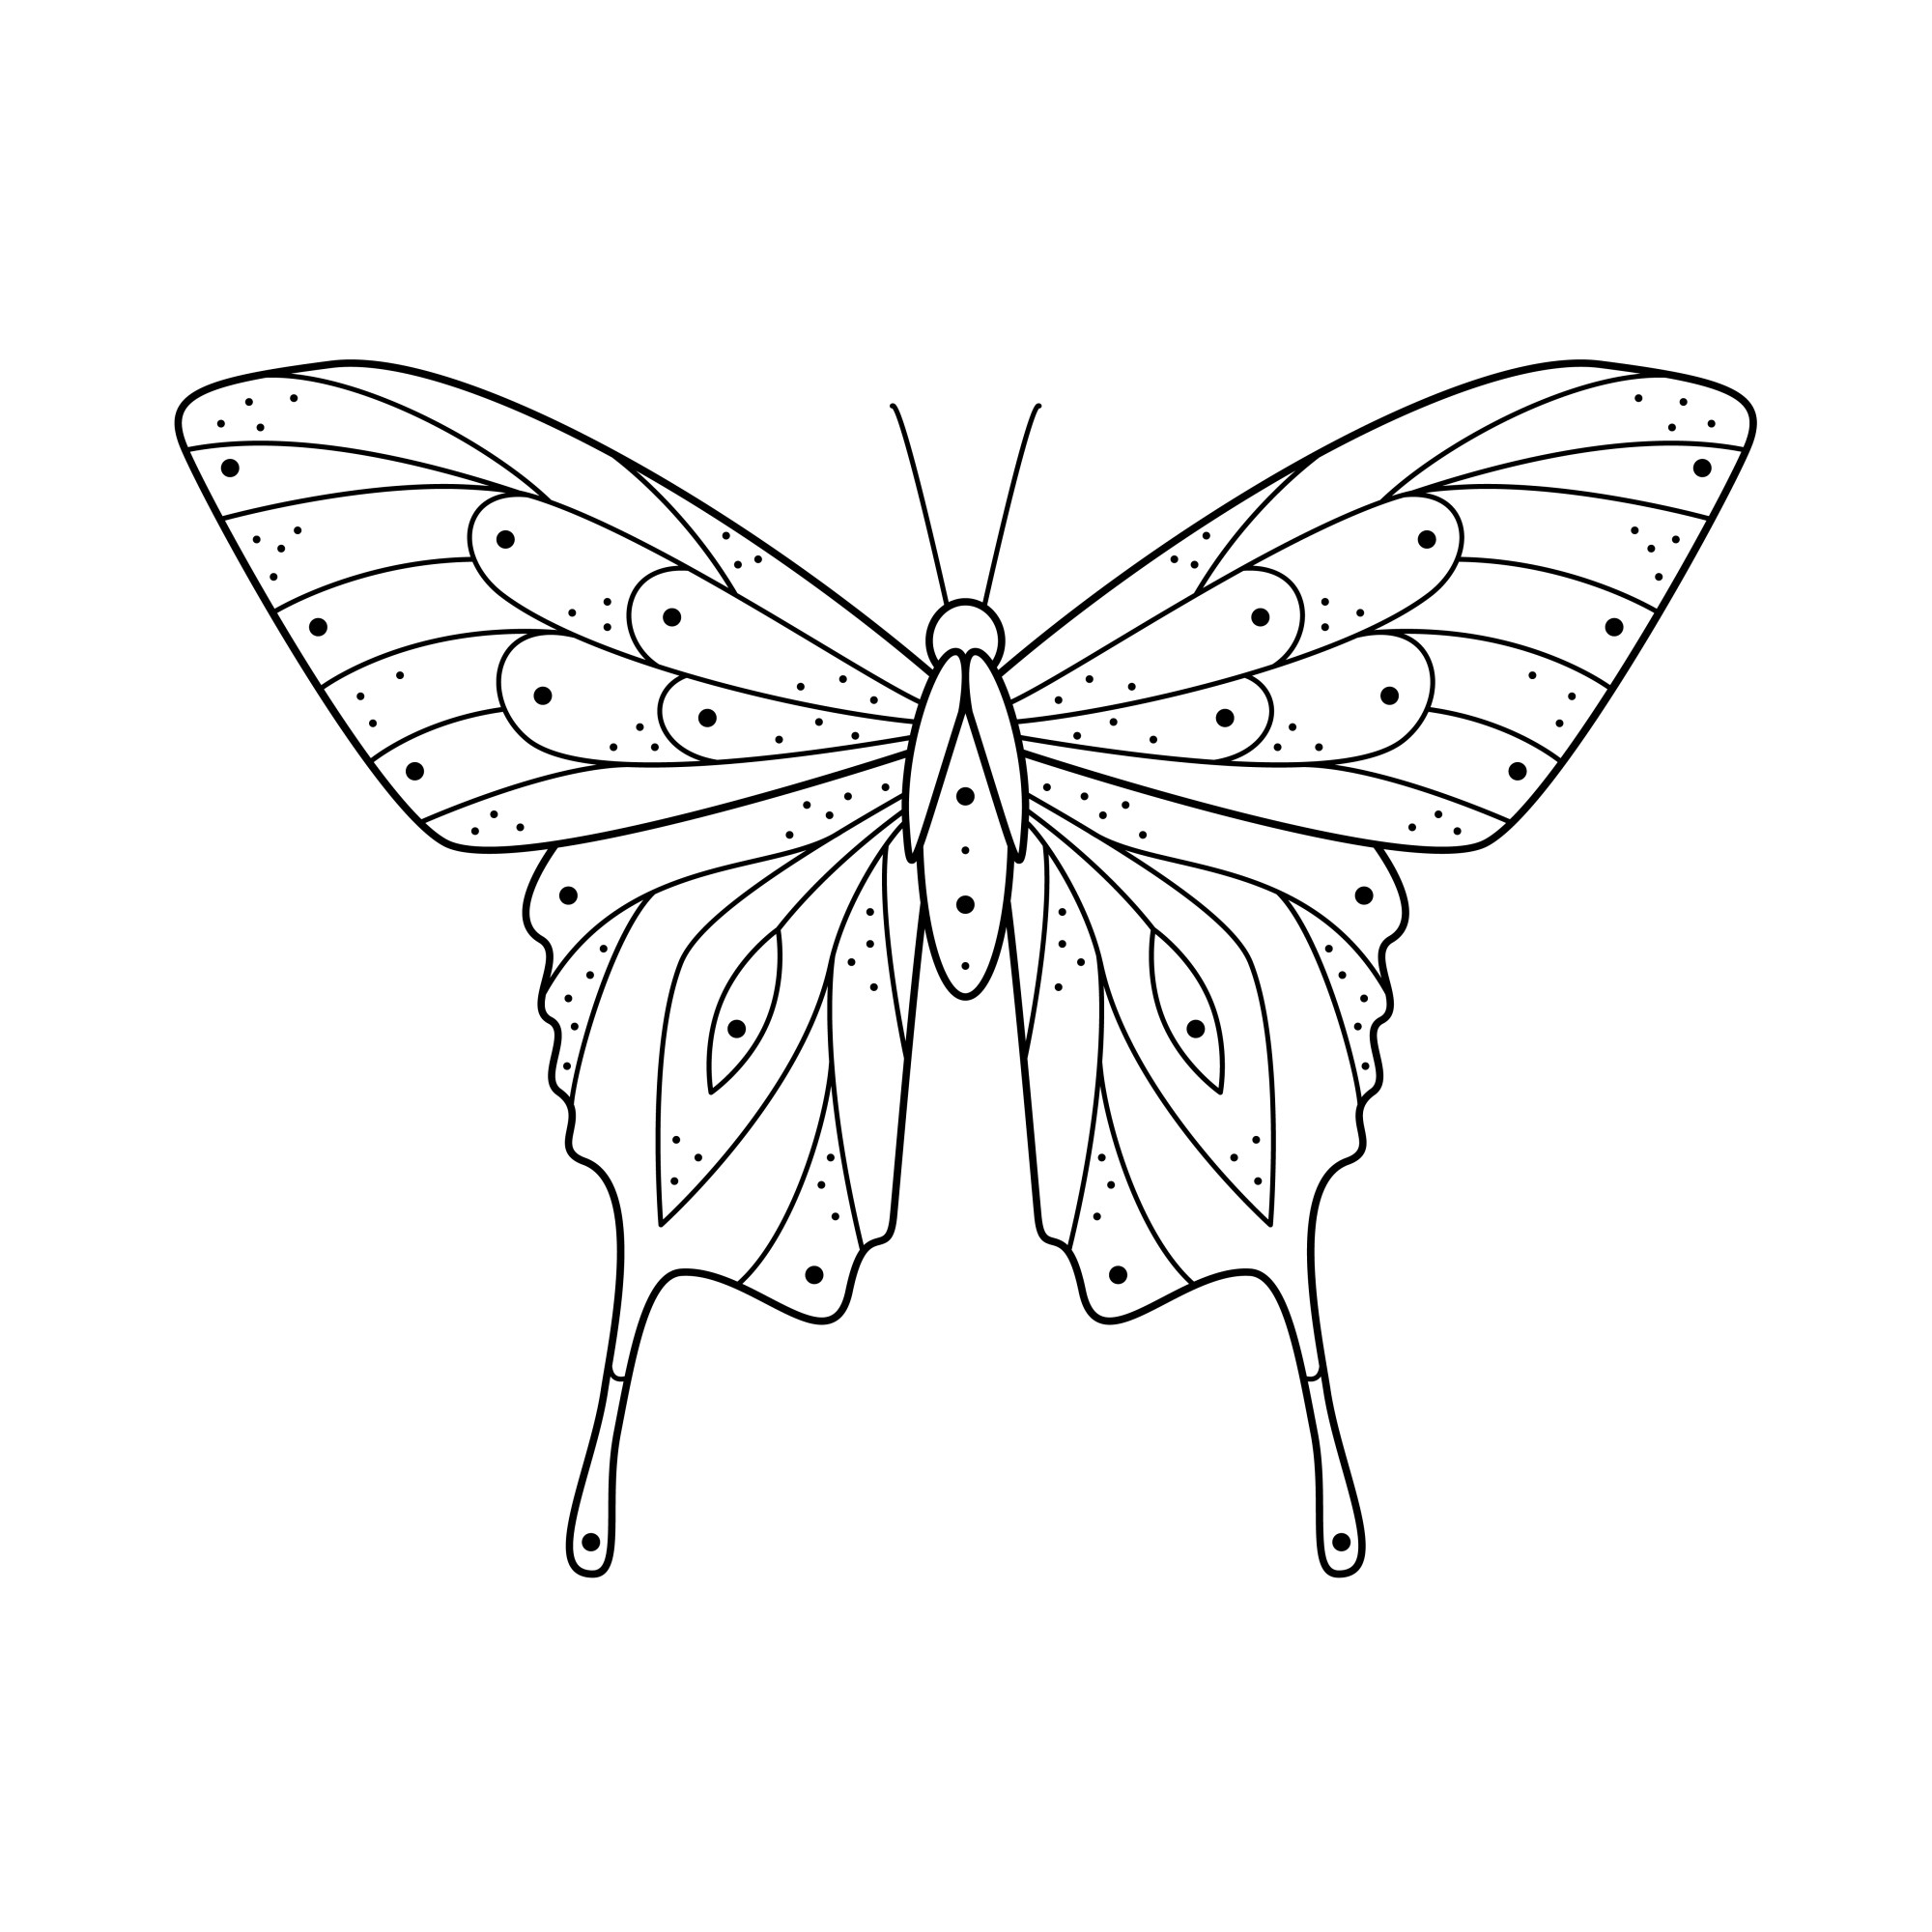 Раскраска для детей: шикарная бабочка